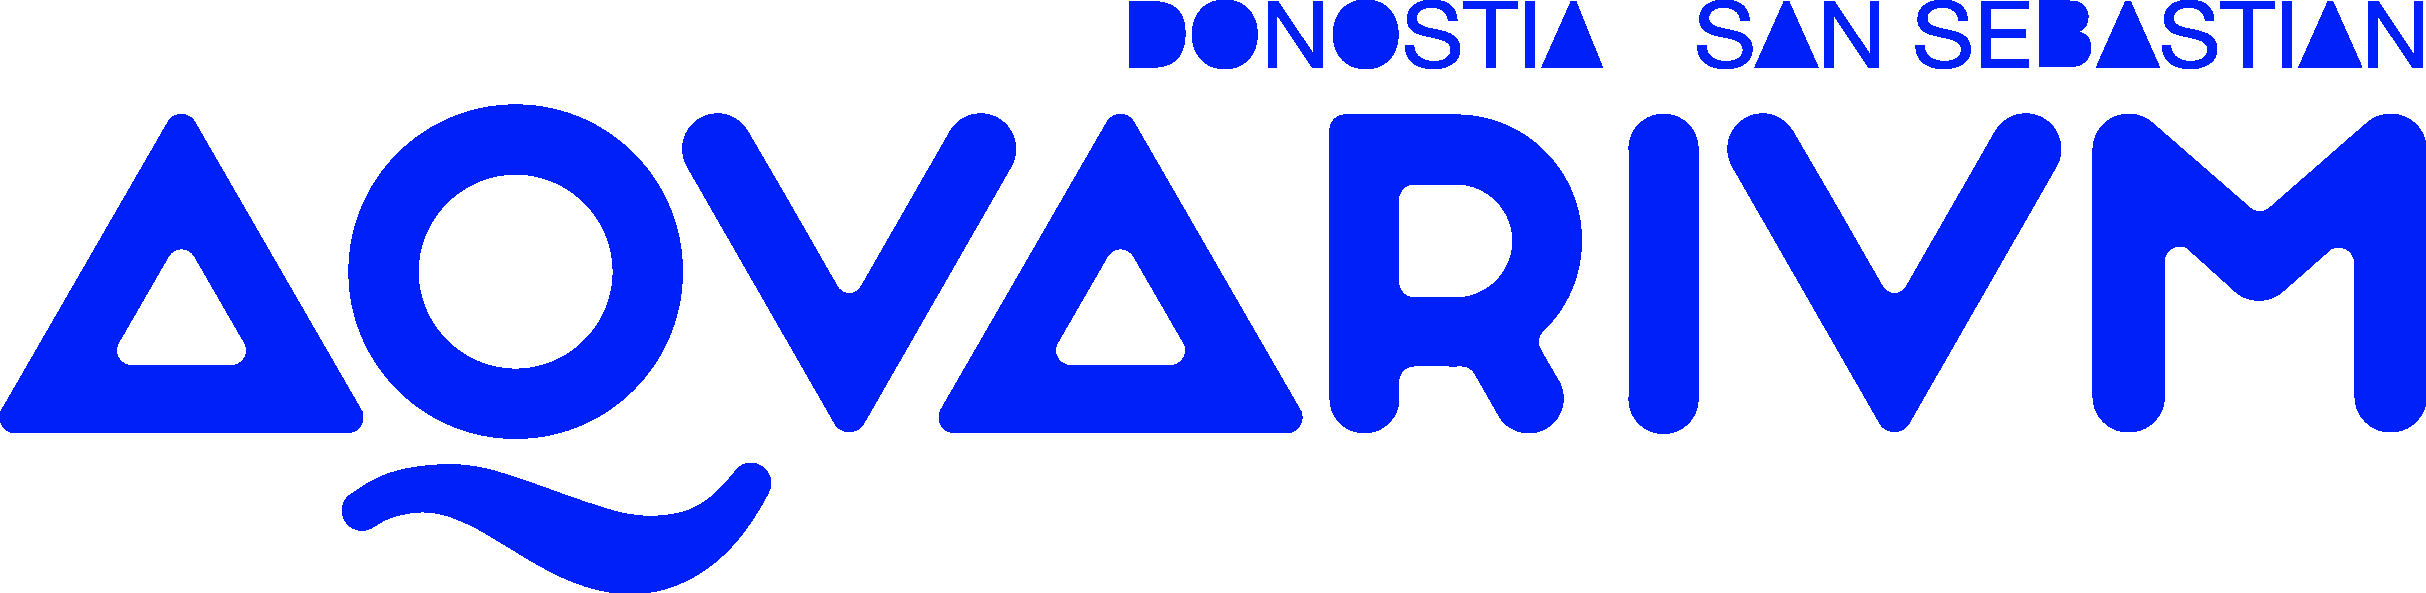 Logo_Donostia